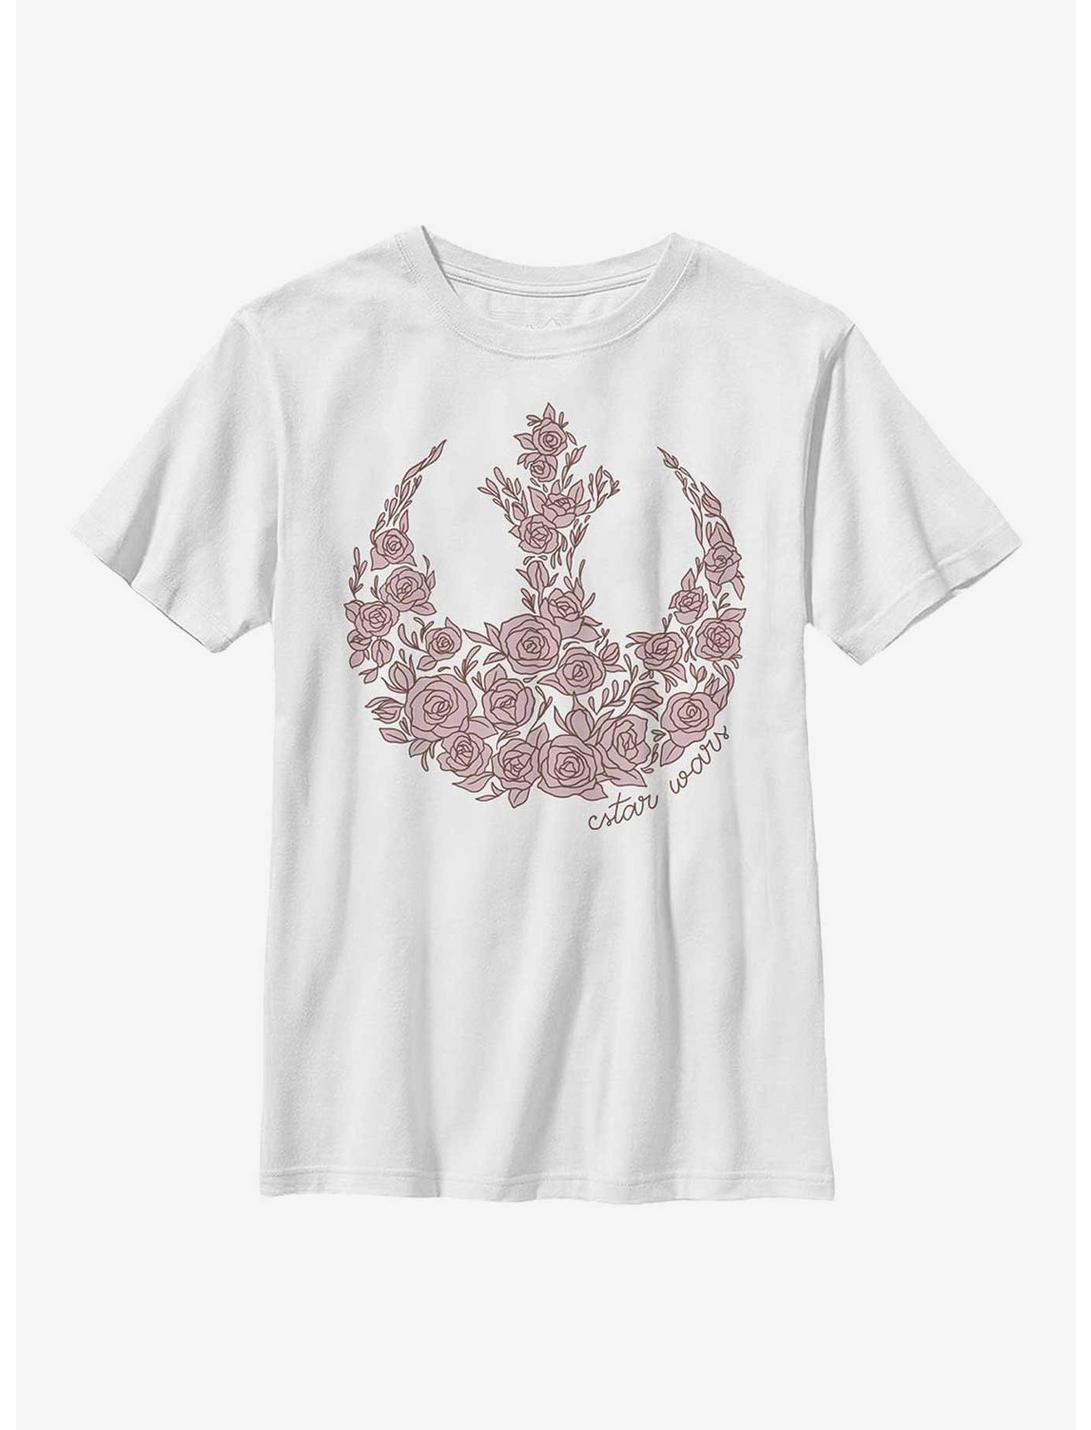 Star Wars Rose Rebel Youth T-Shirt, WHITE, hi-res